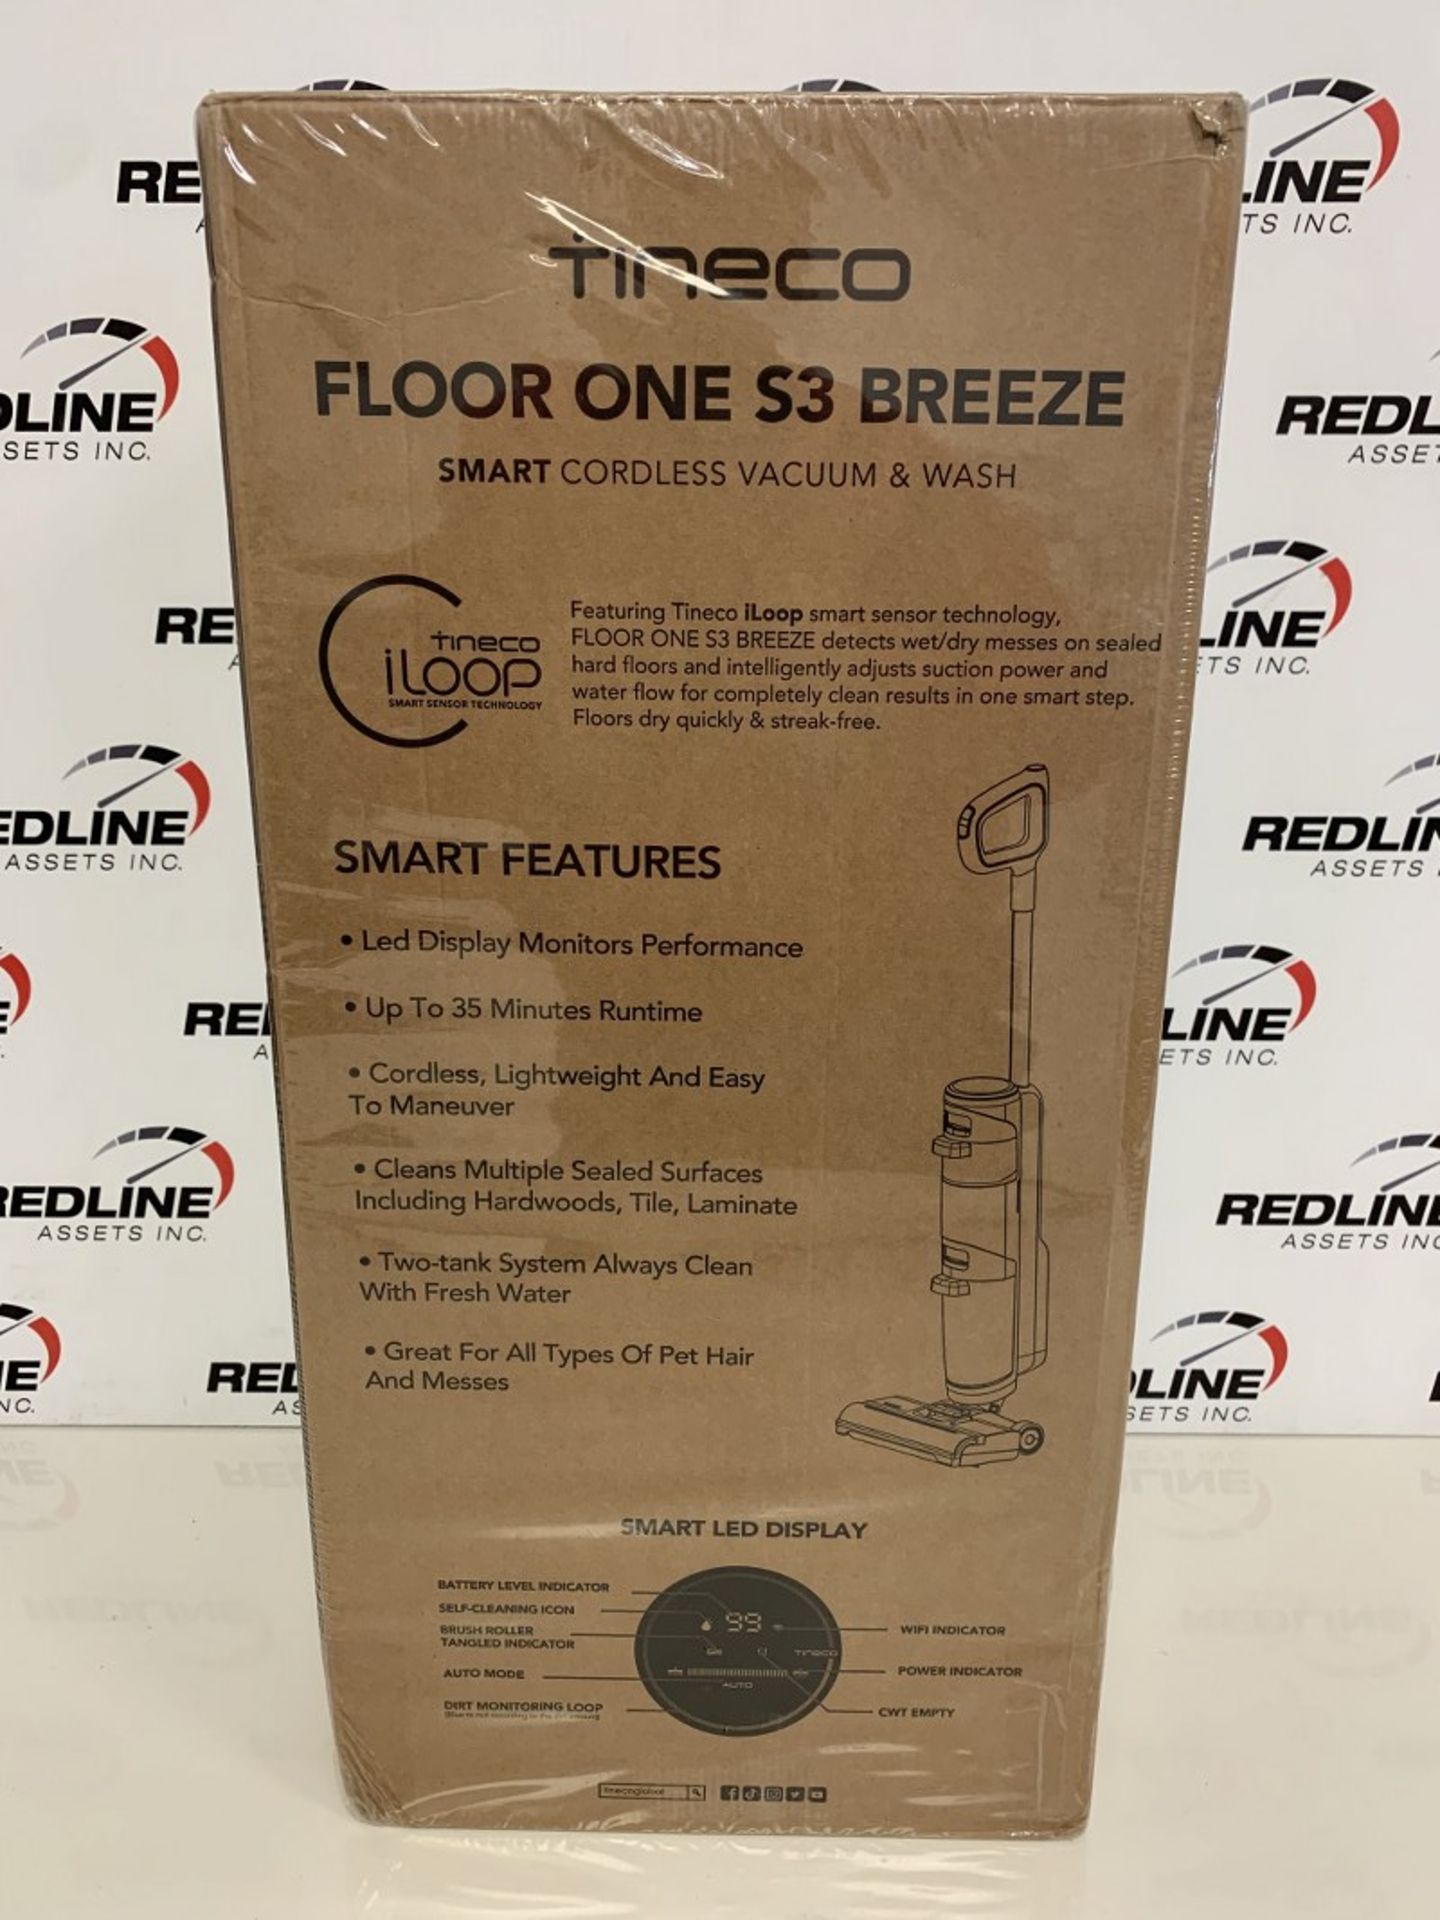 Tineco - Floor One S3 Breeze - Smart Cordless Vacuum - Image 2 of 2